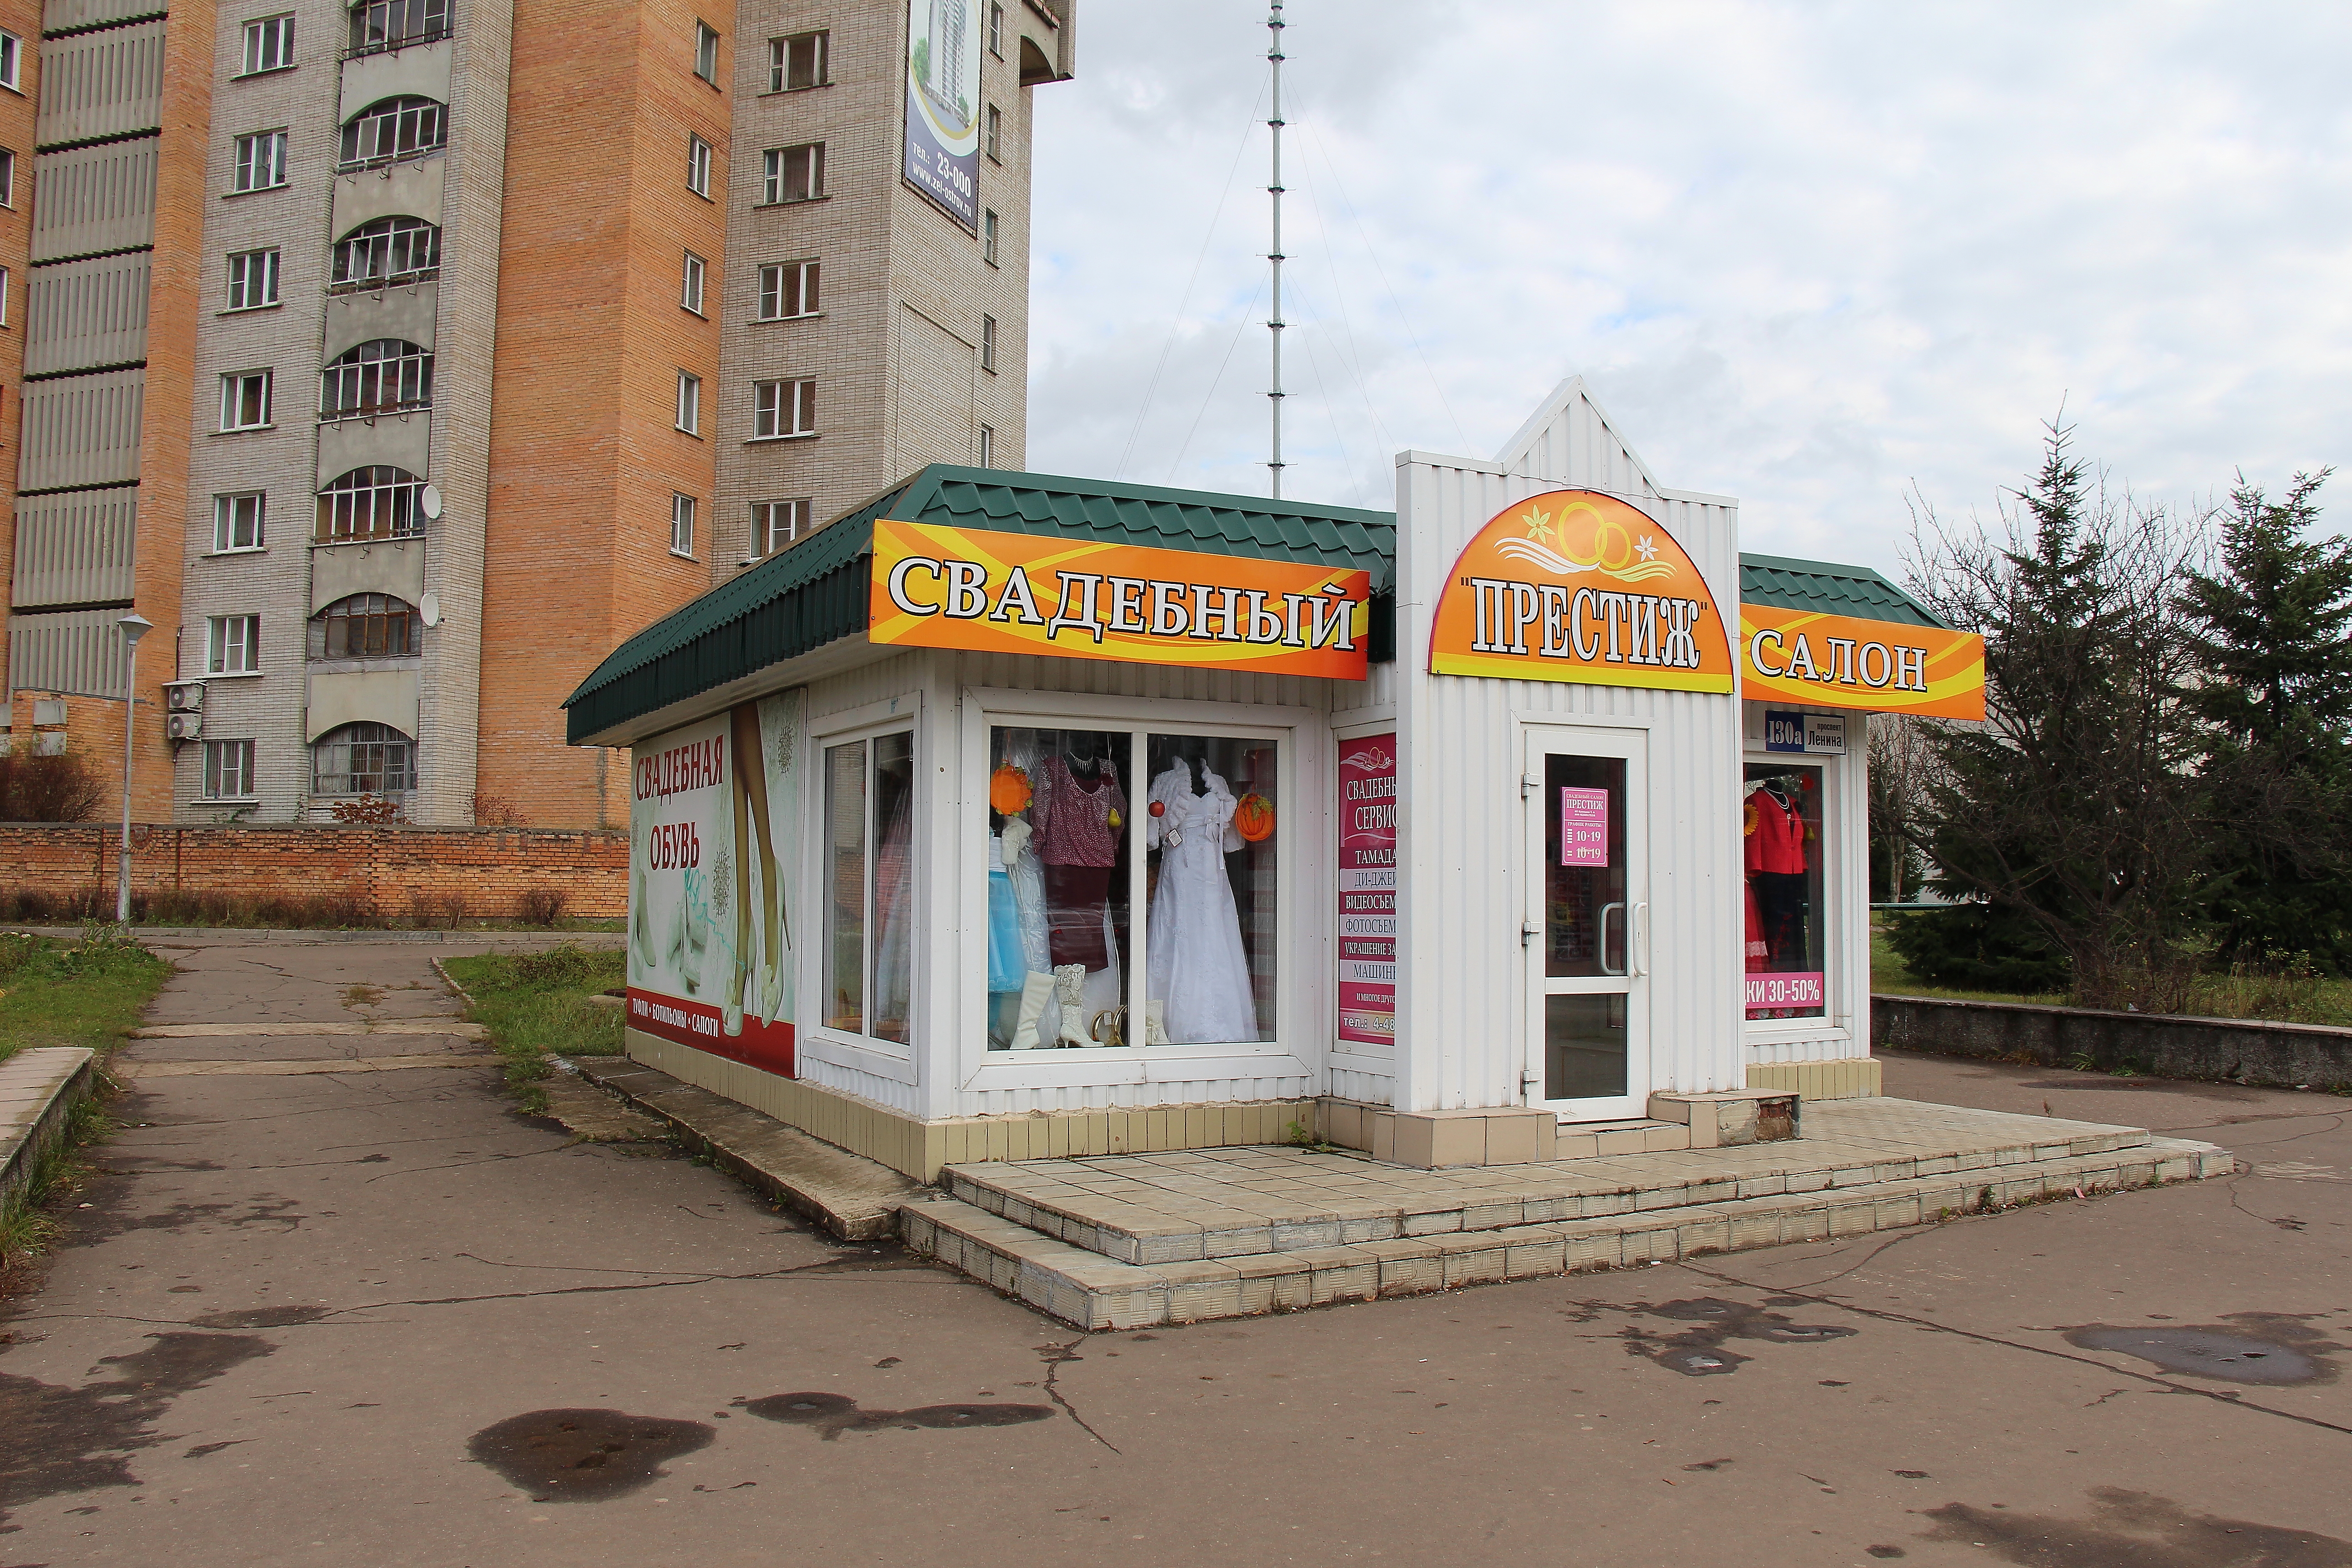 Свадебный салон Обнинск